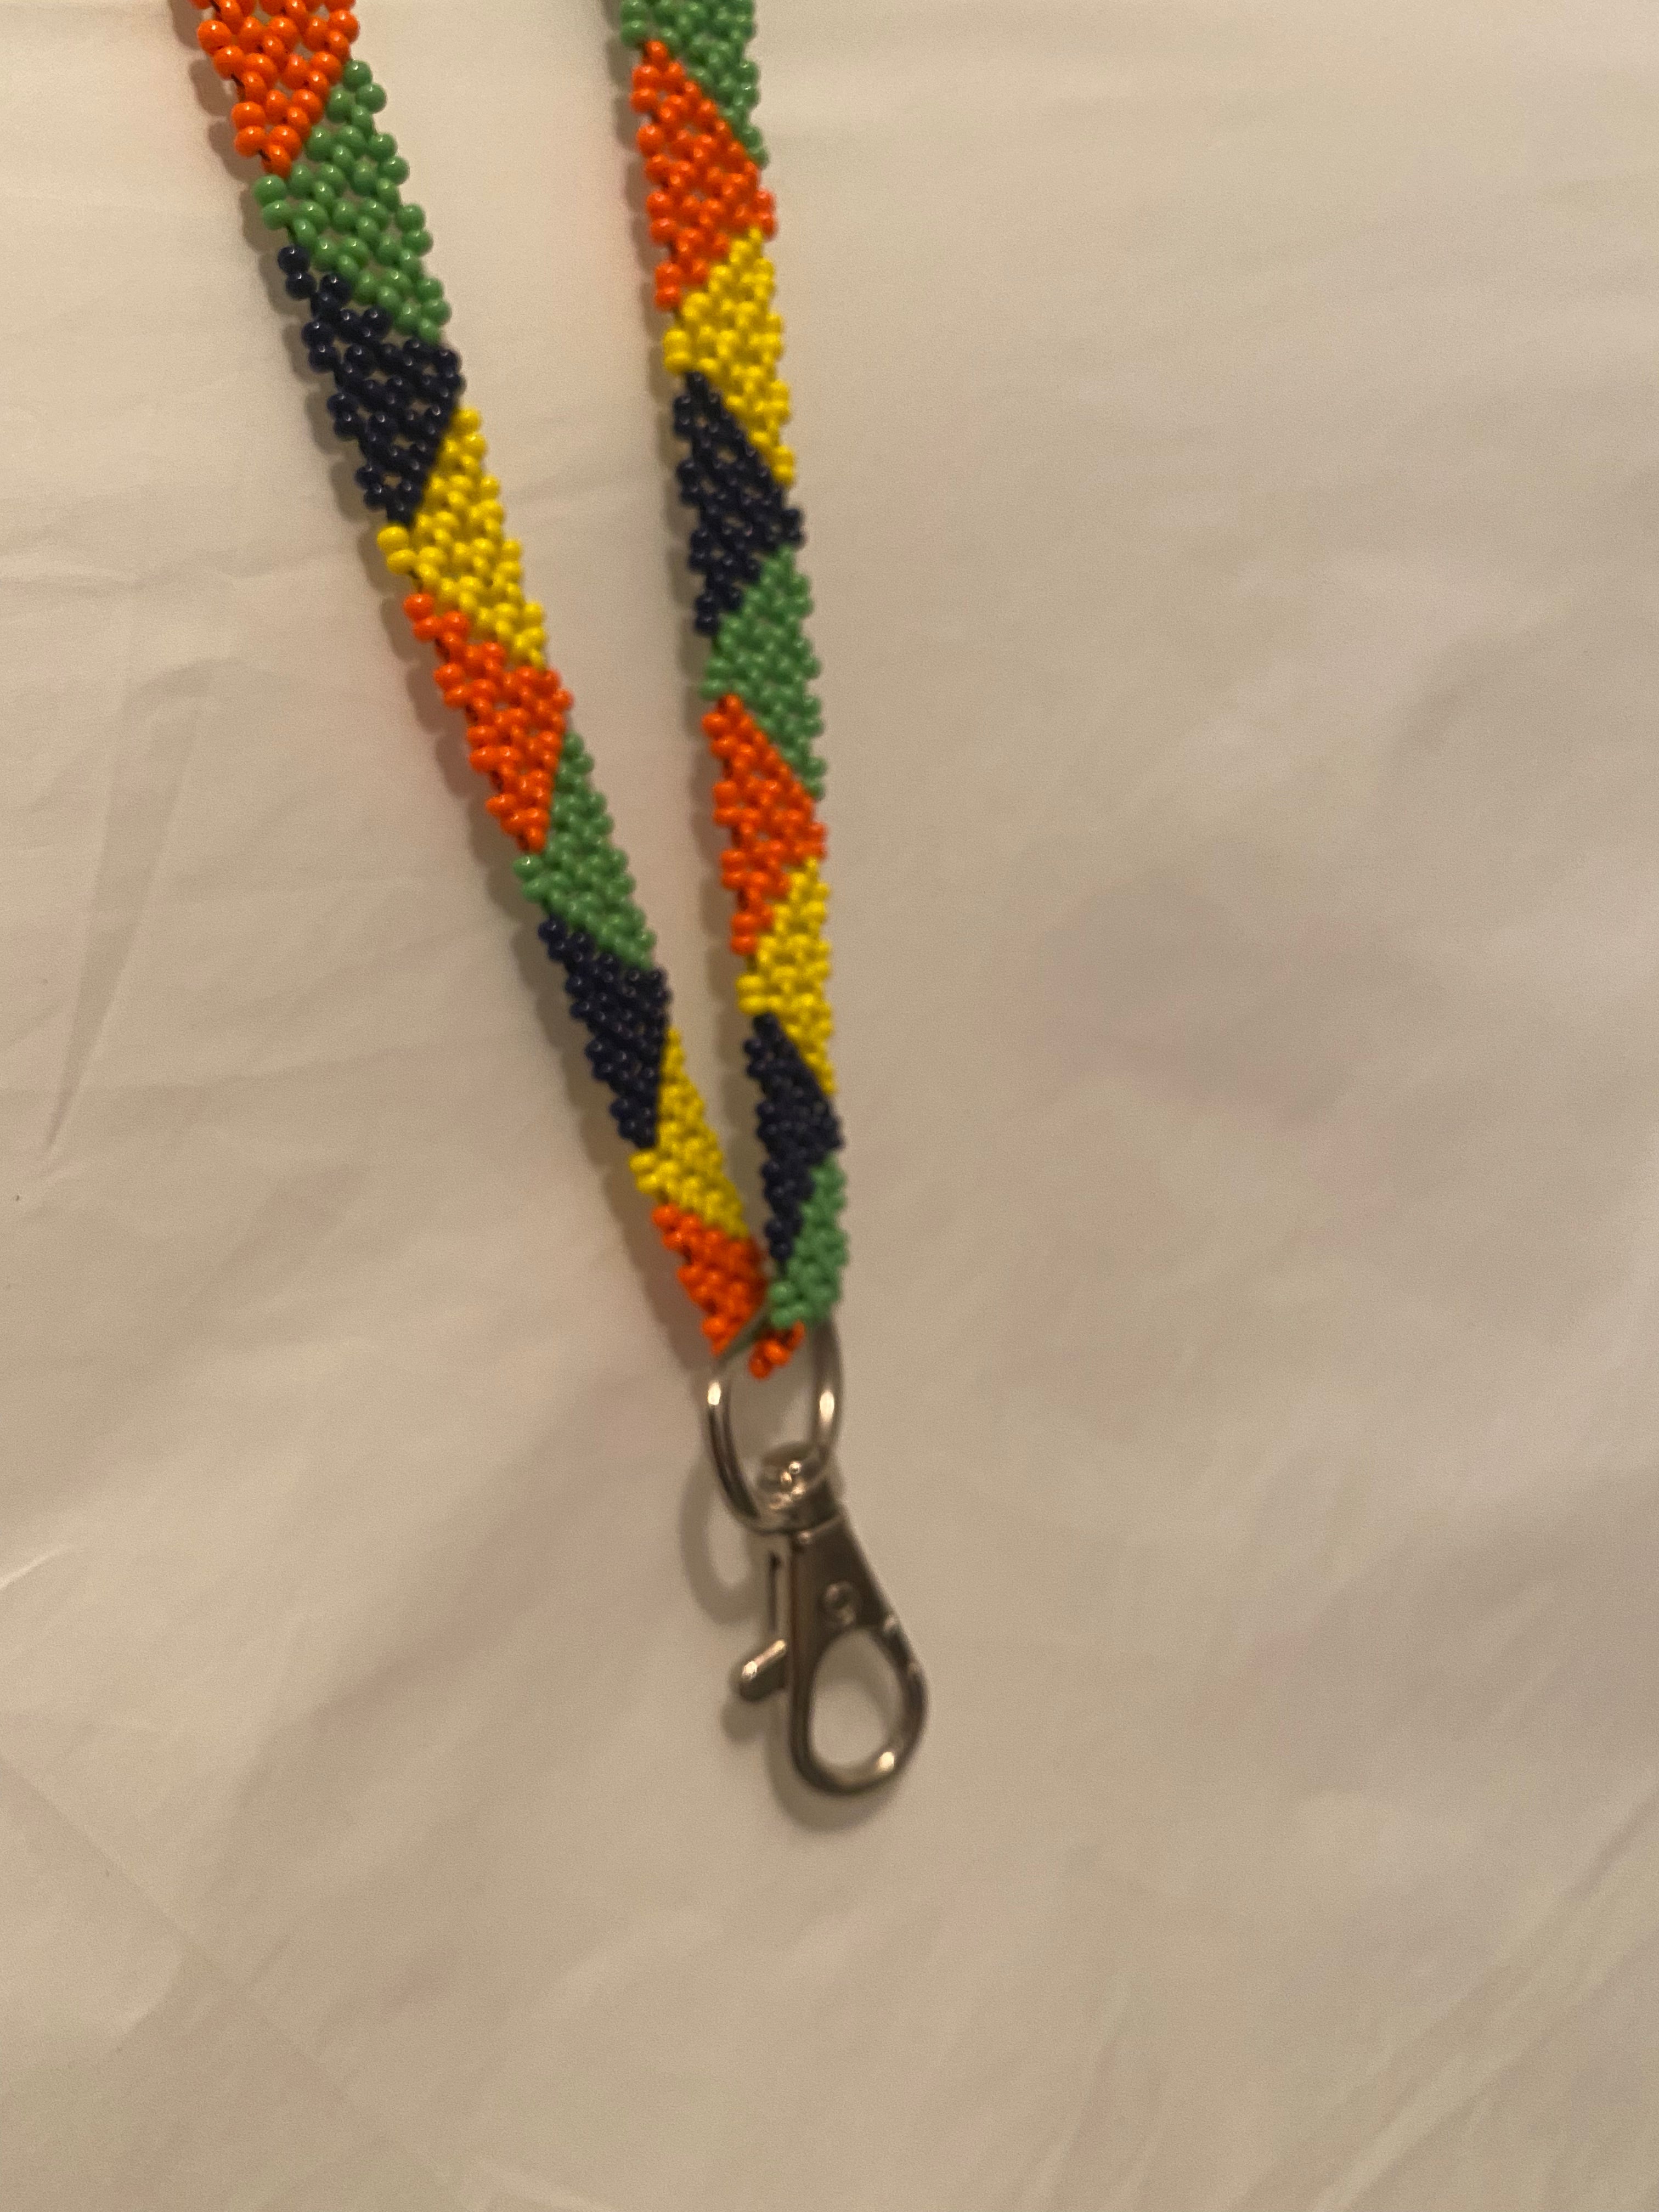 Schlüsselband aus Perlen - yellow/orange/green/dark blue